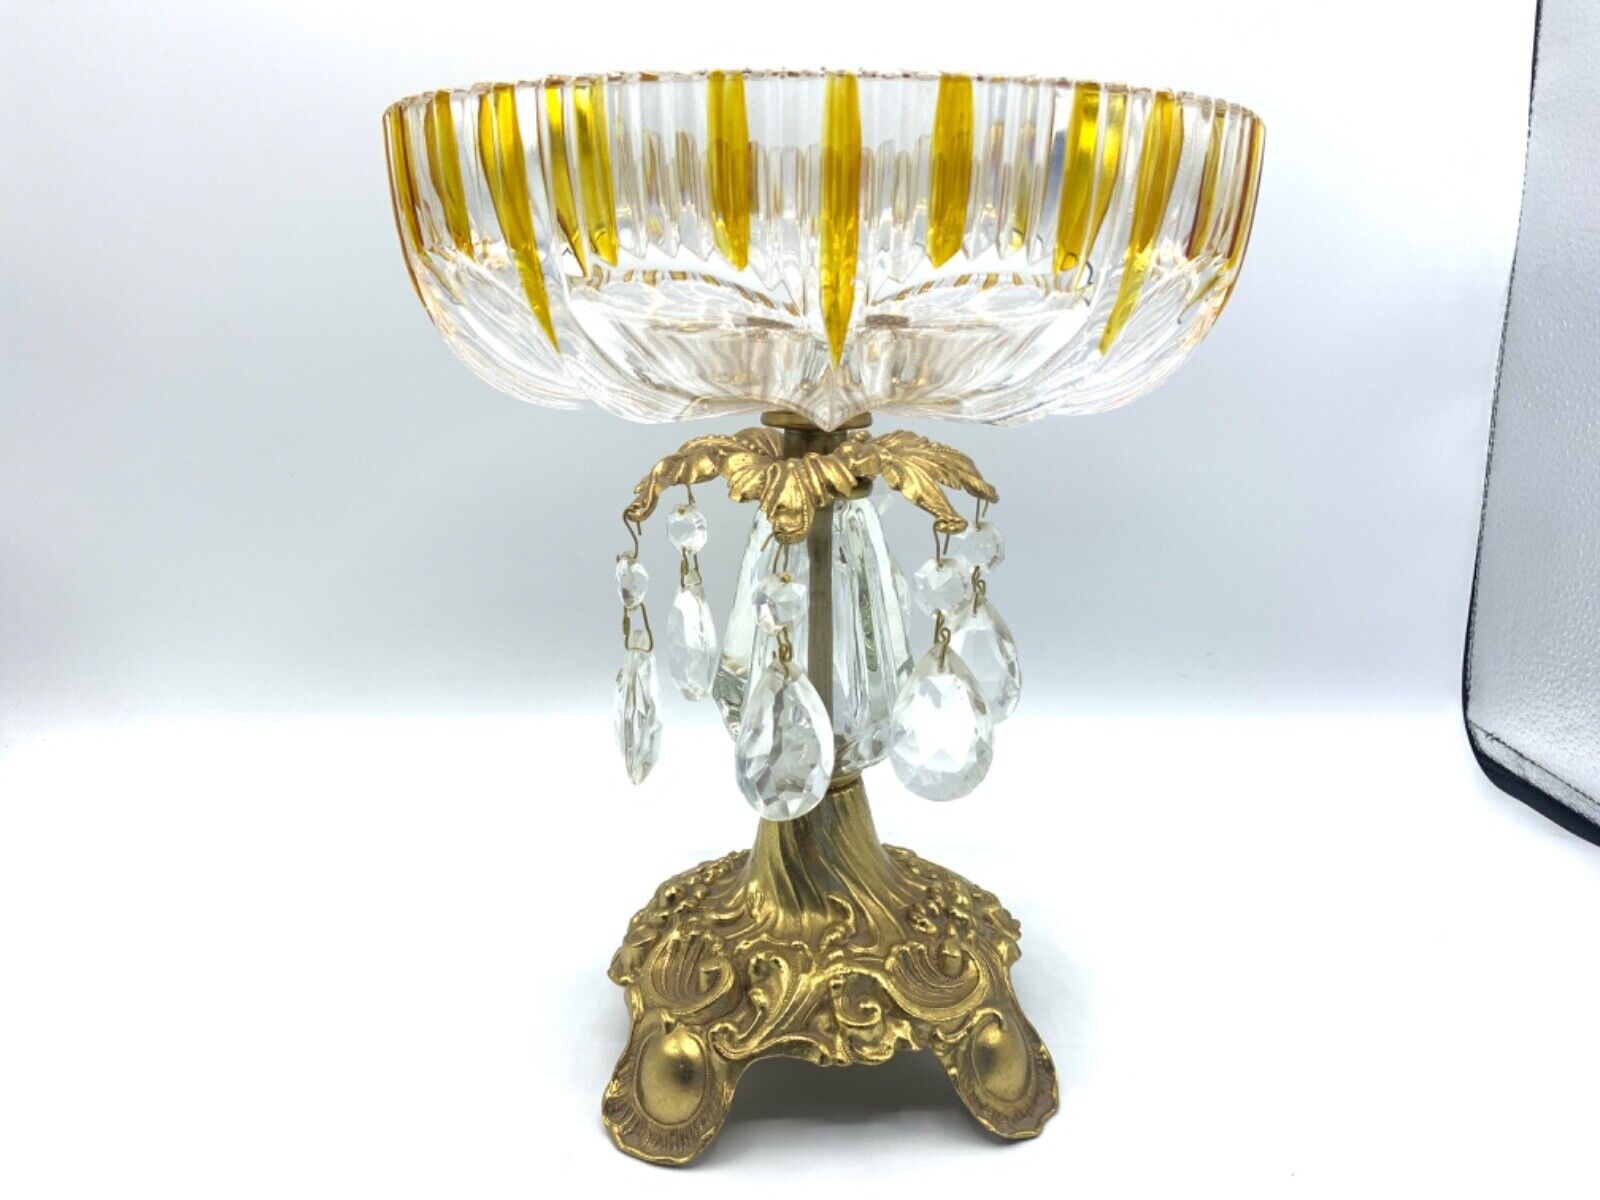 Vtg Hollywood Regency Ornate Compote Pedestal Bowl 9” Brass Crystal West Germany